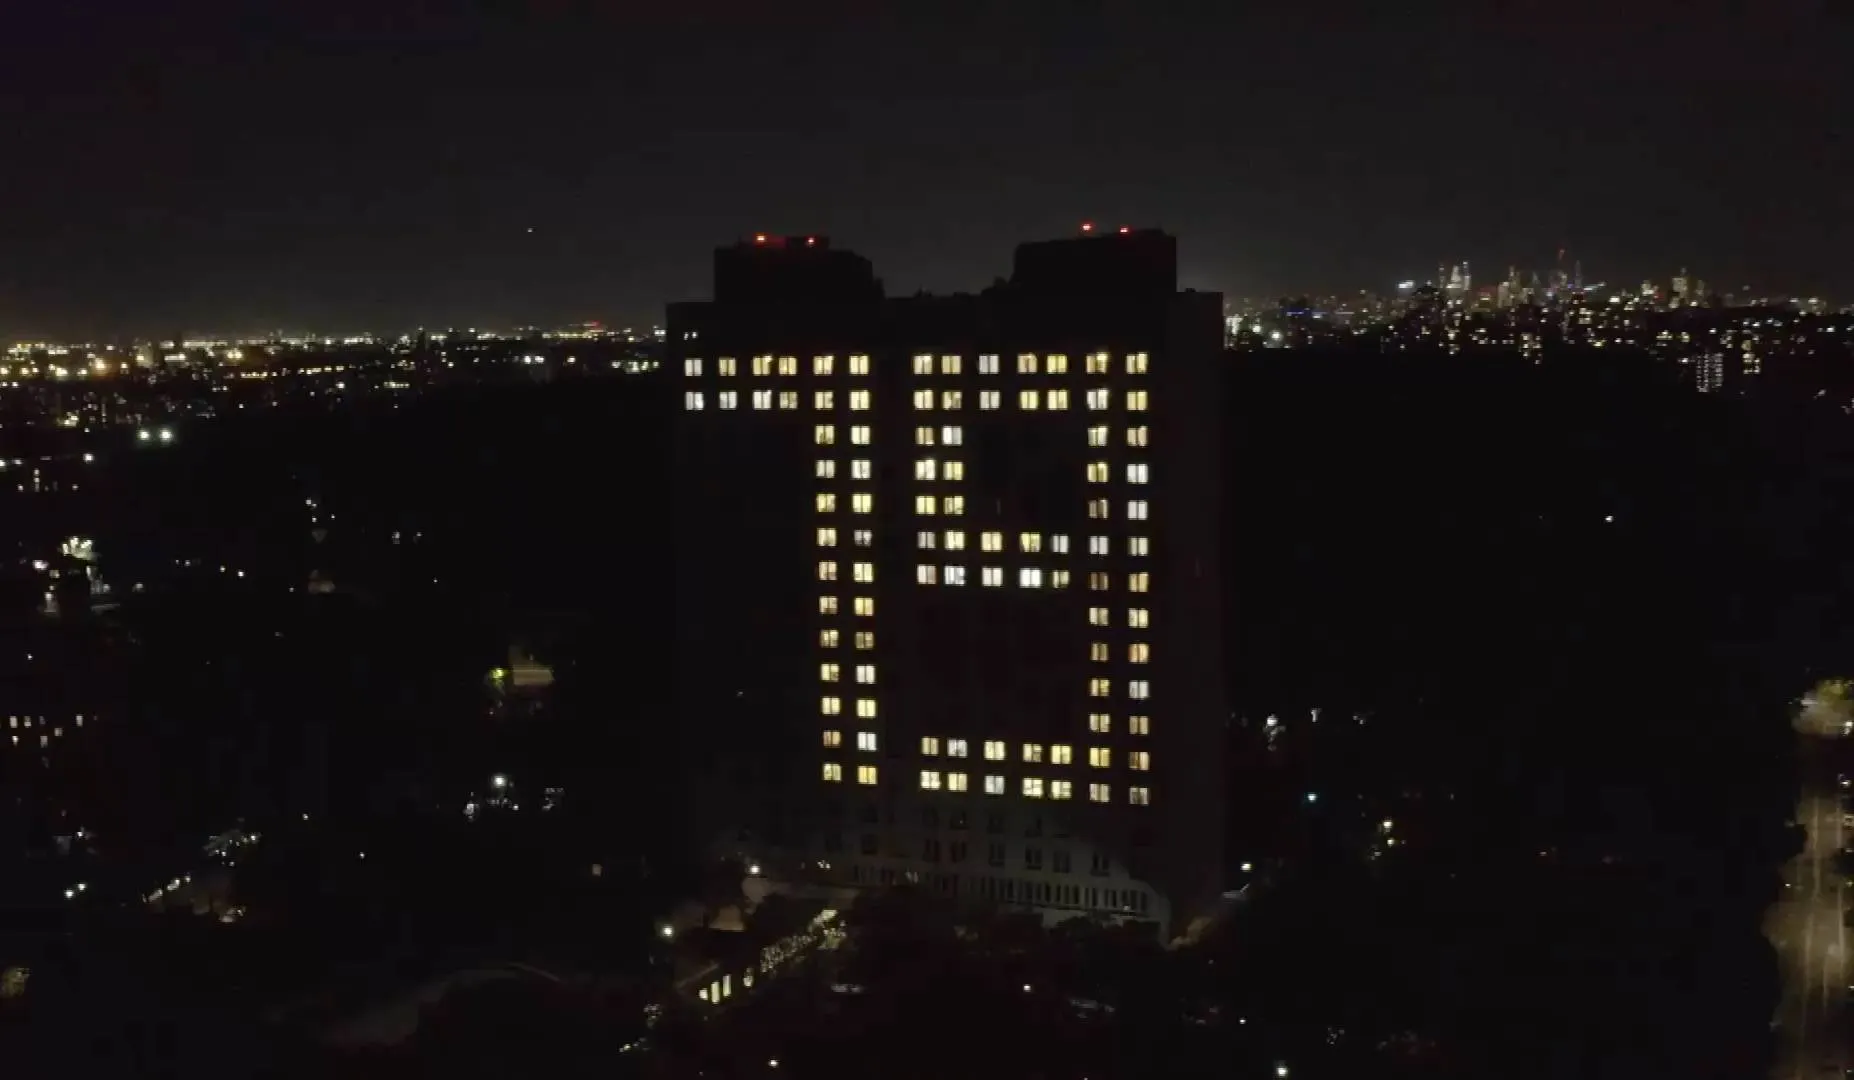 Постпредство РФ зажгло число 79 на здании в США в честь Дня Победы